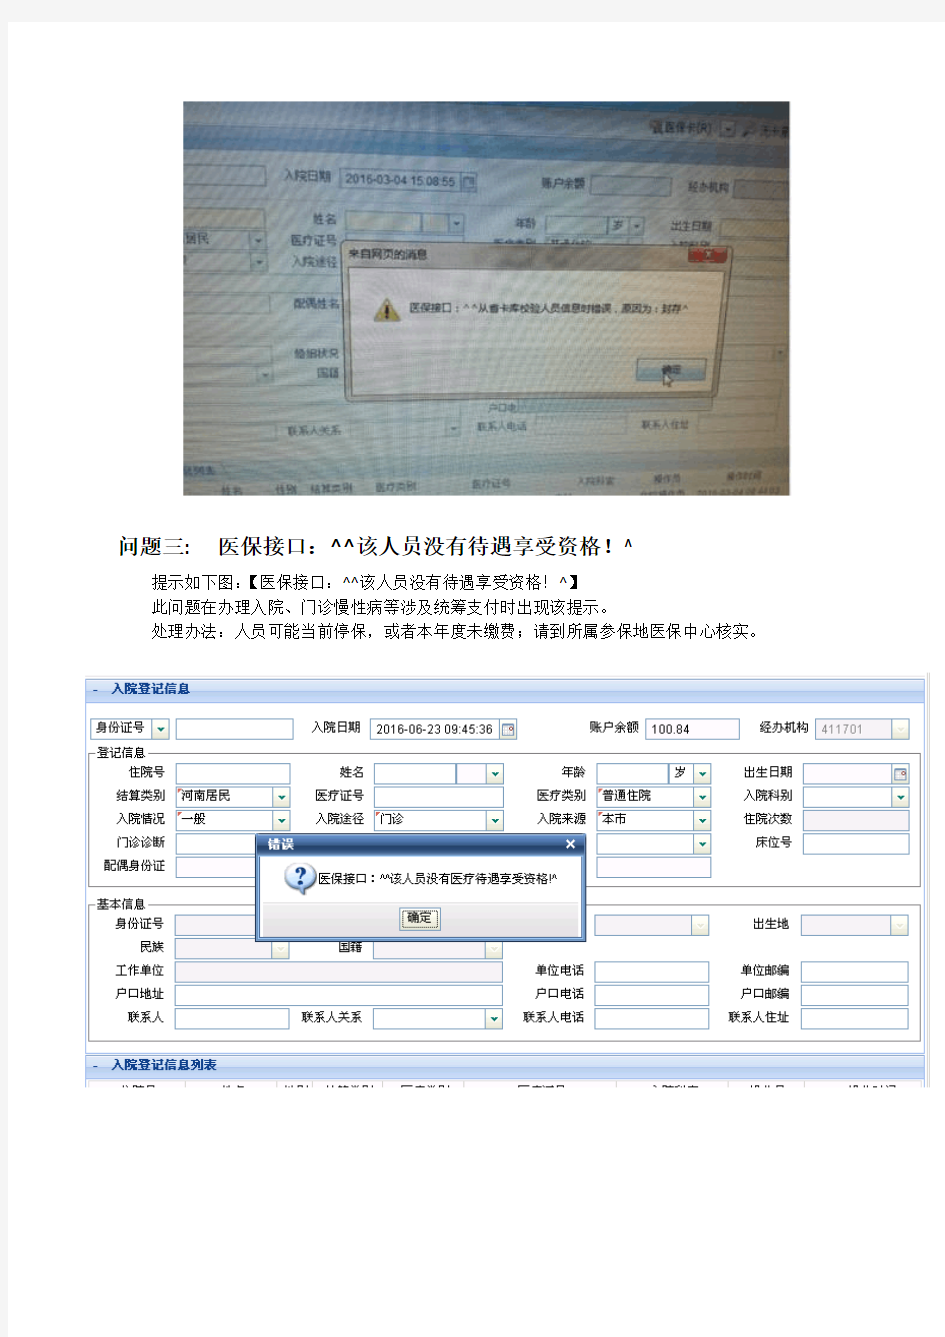 河南省医保收费系统-常见问题及错误处理办法资料